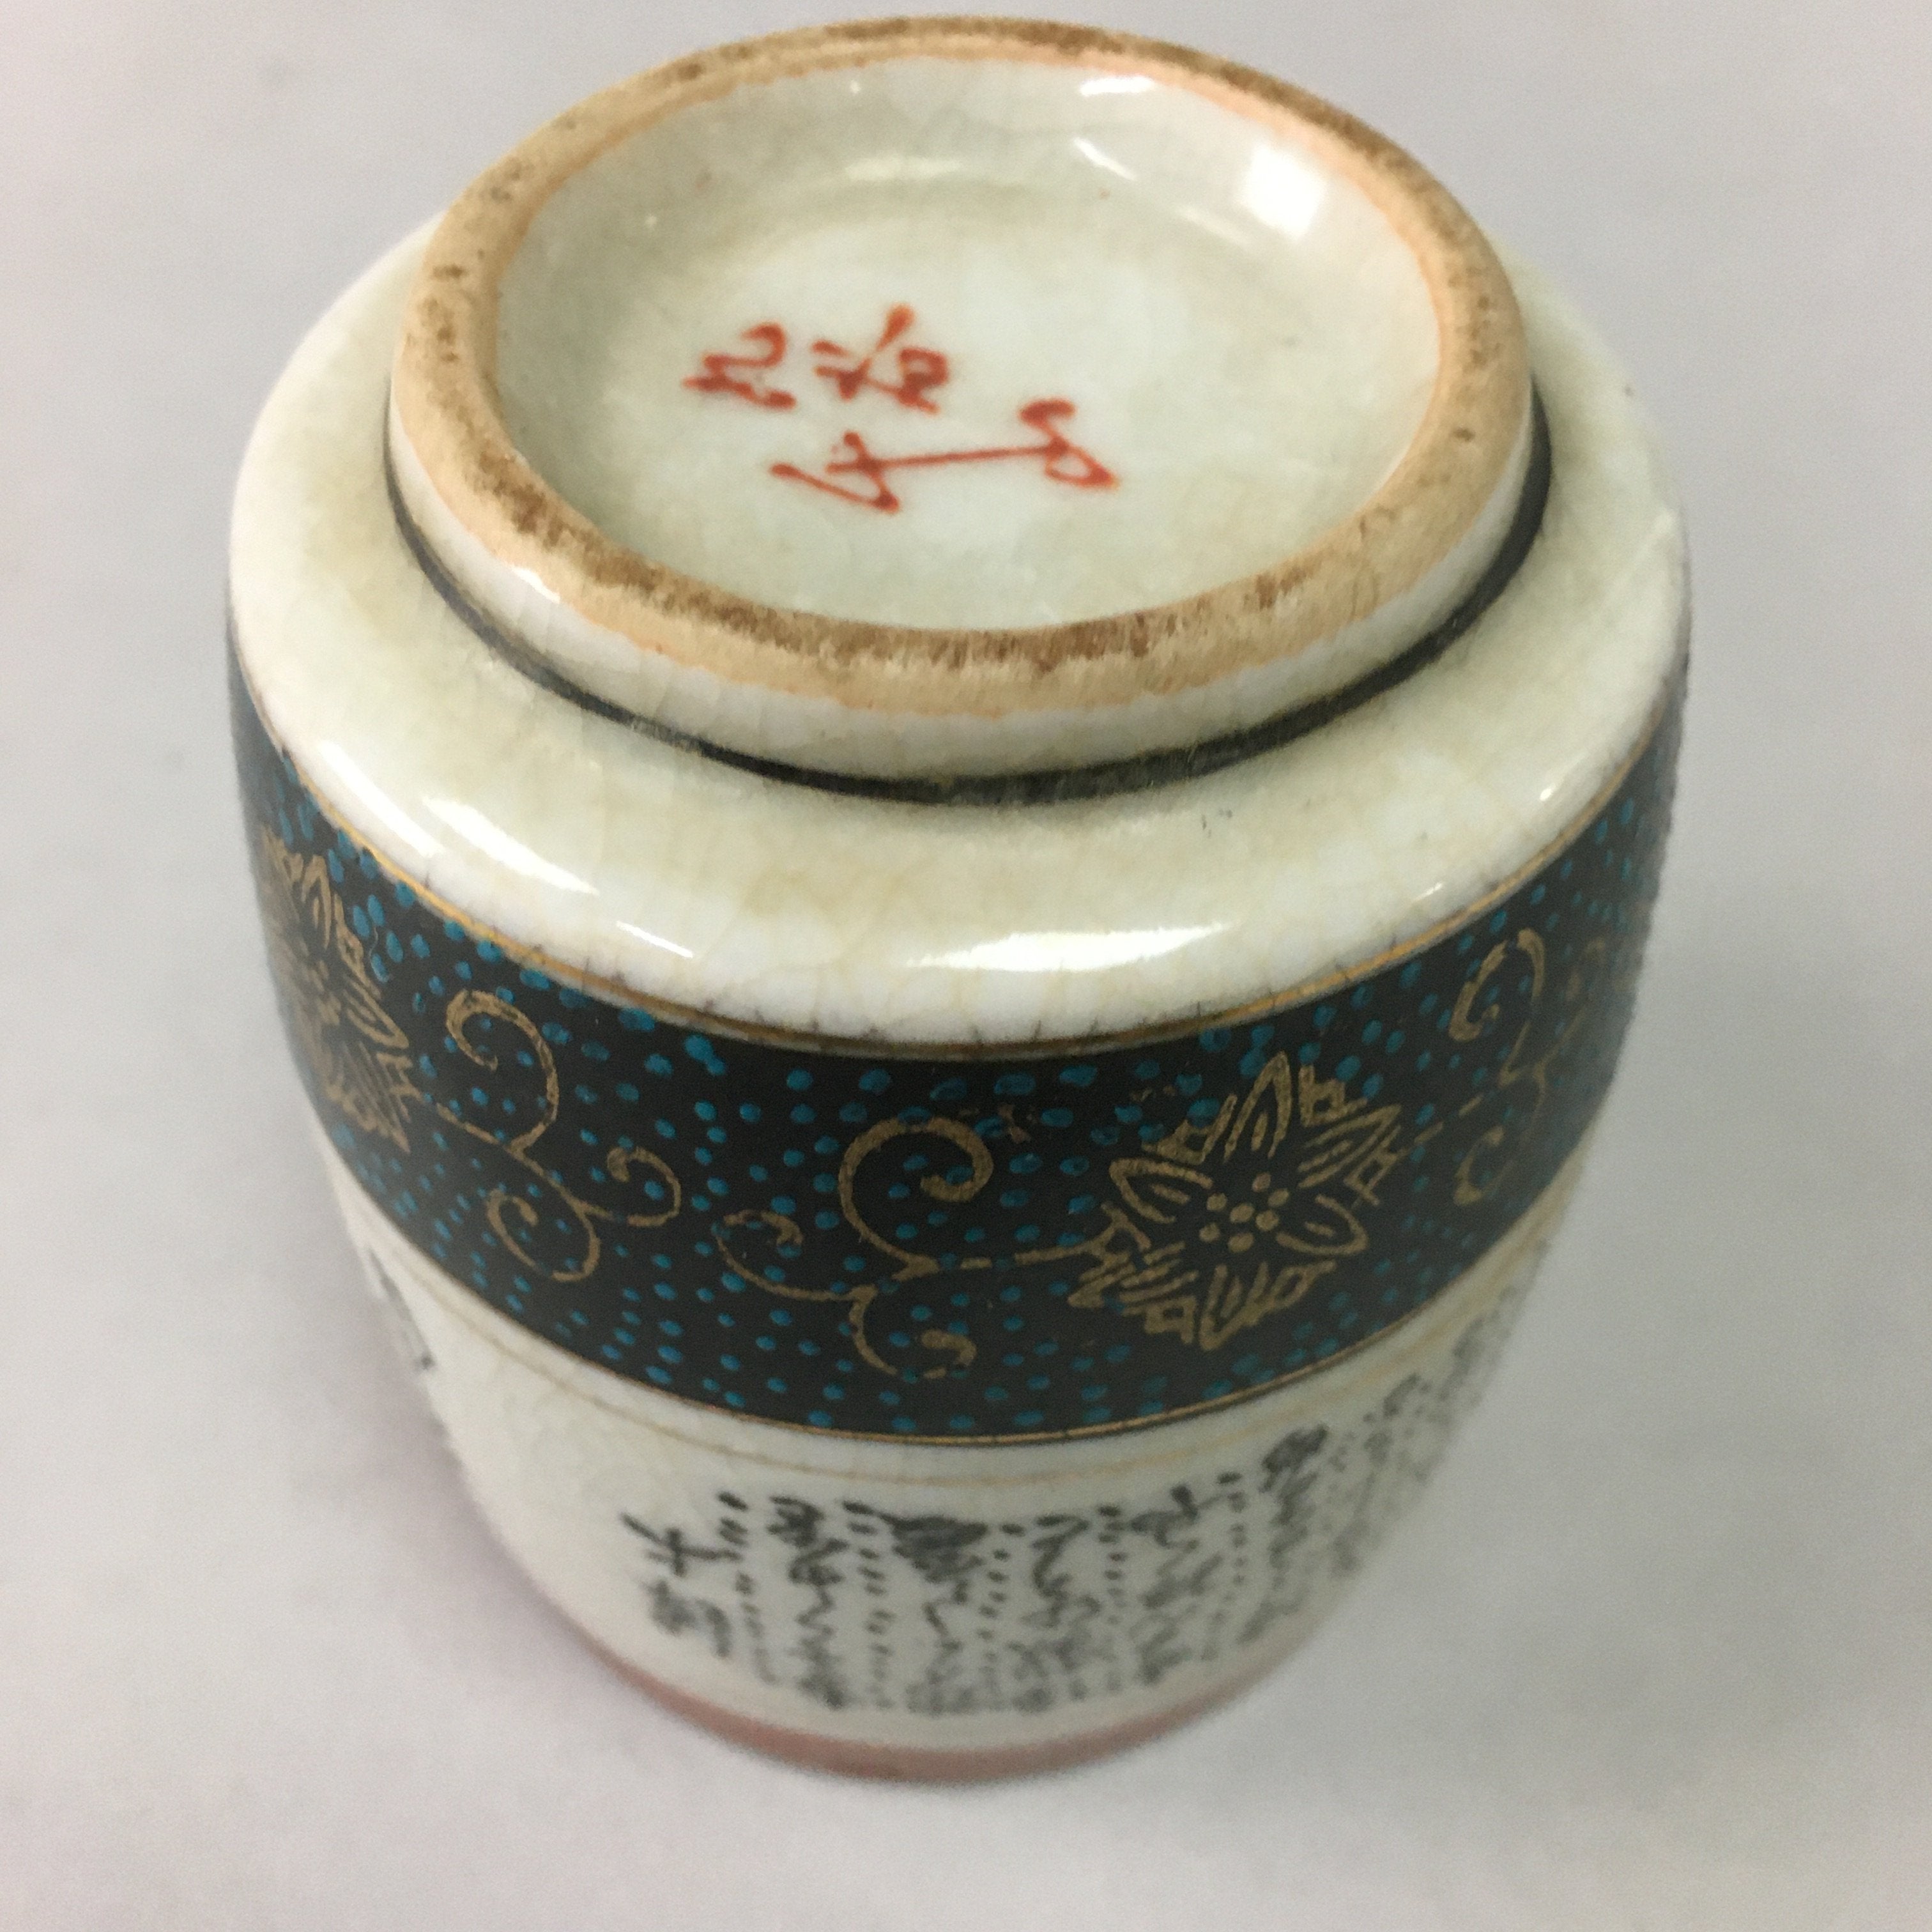 Japanese Ceramic Teacup Kutani ware Yunomi Vtg Pottery Sencha TC97